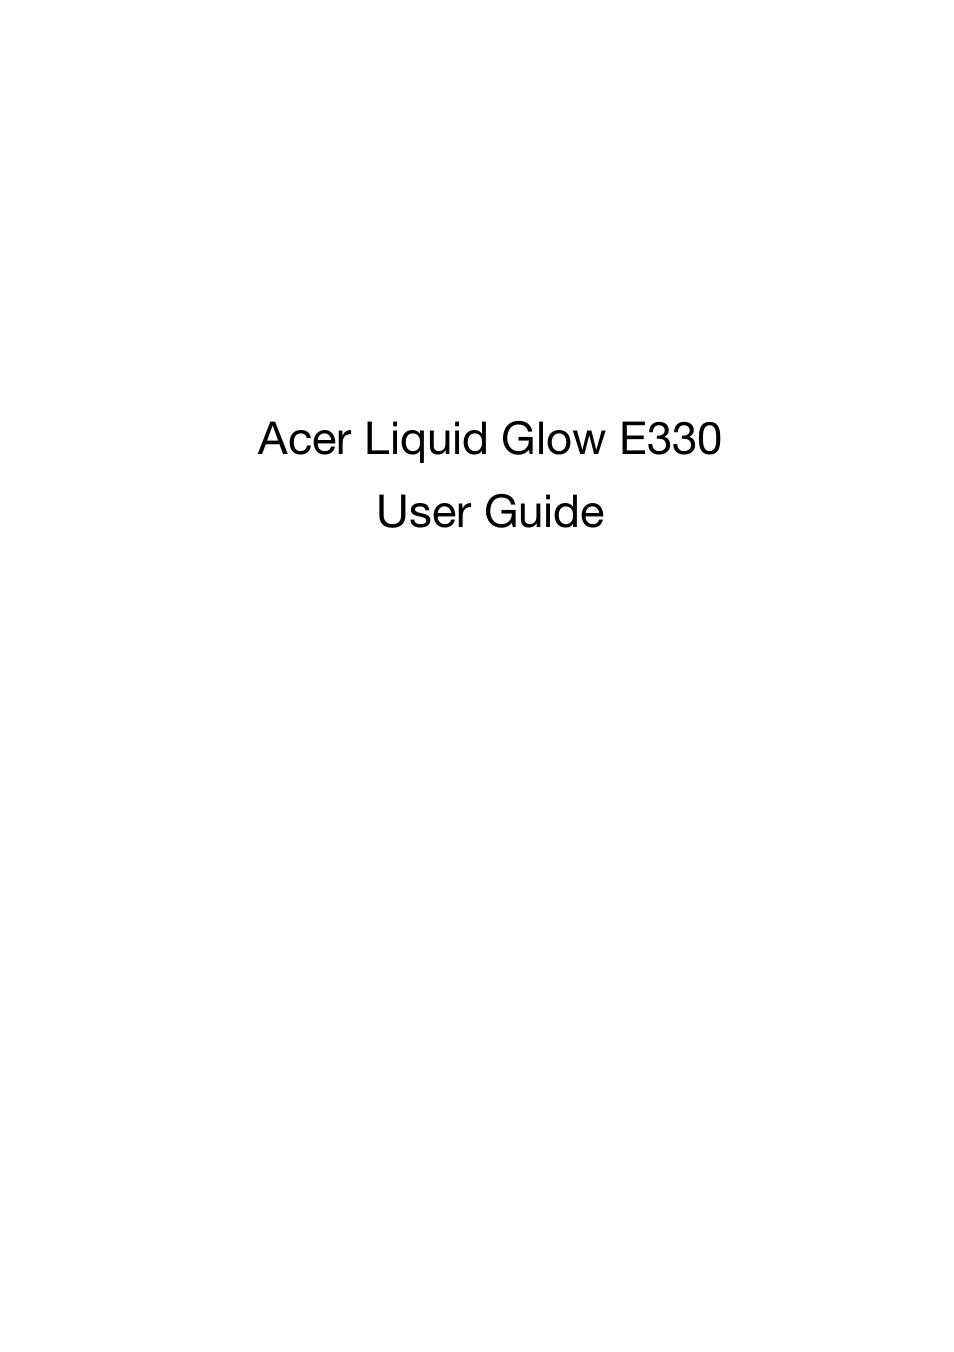 Liquid Glow (Page 1)